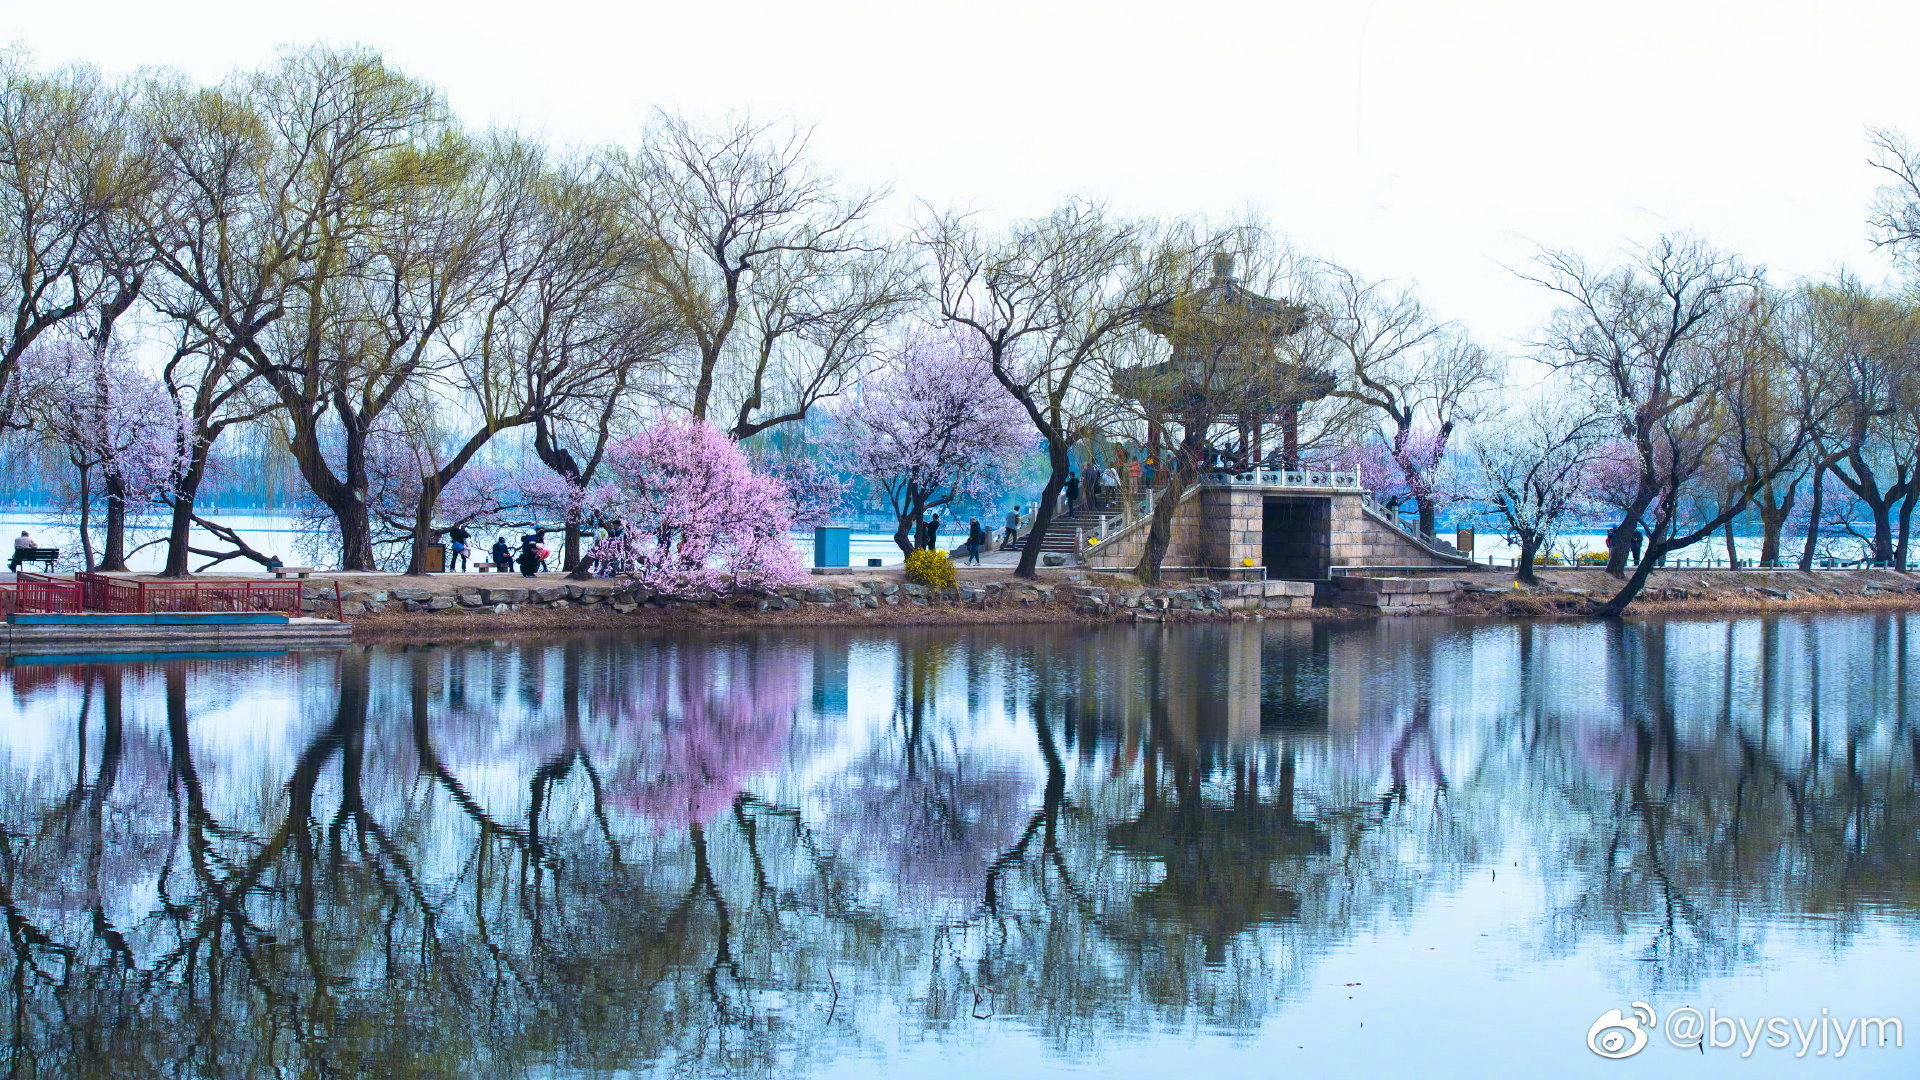 【高清图】初春的世纪公园-中关村在线摄影论坛